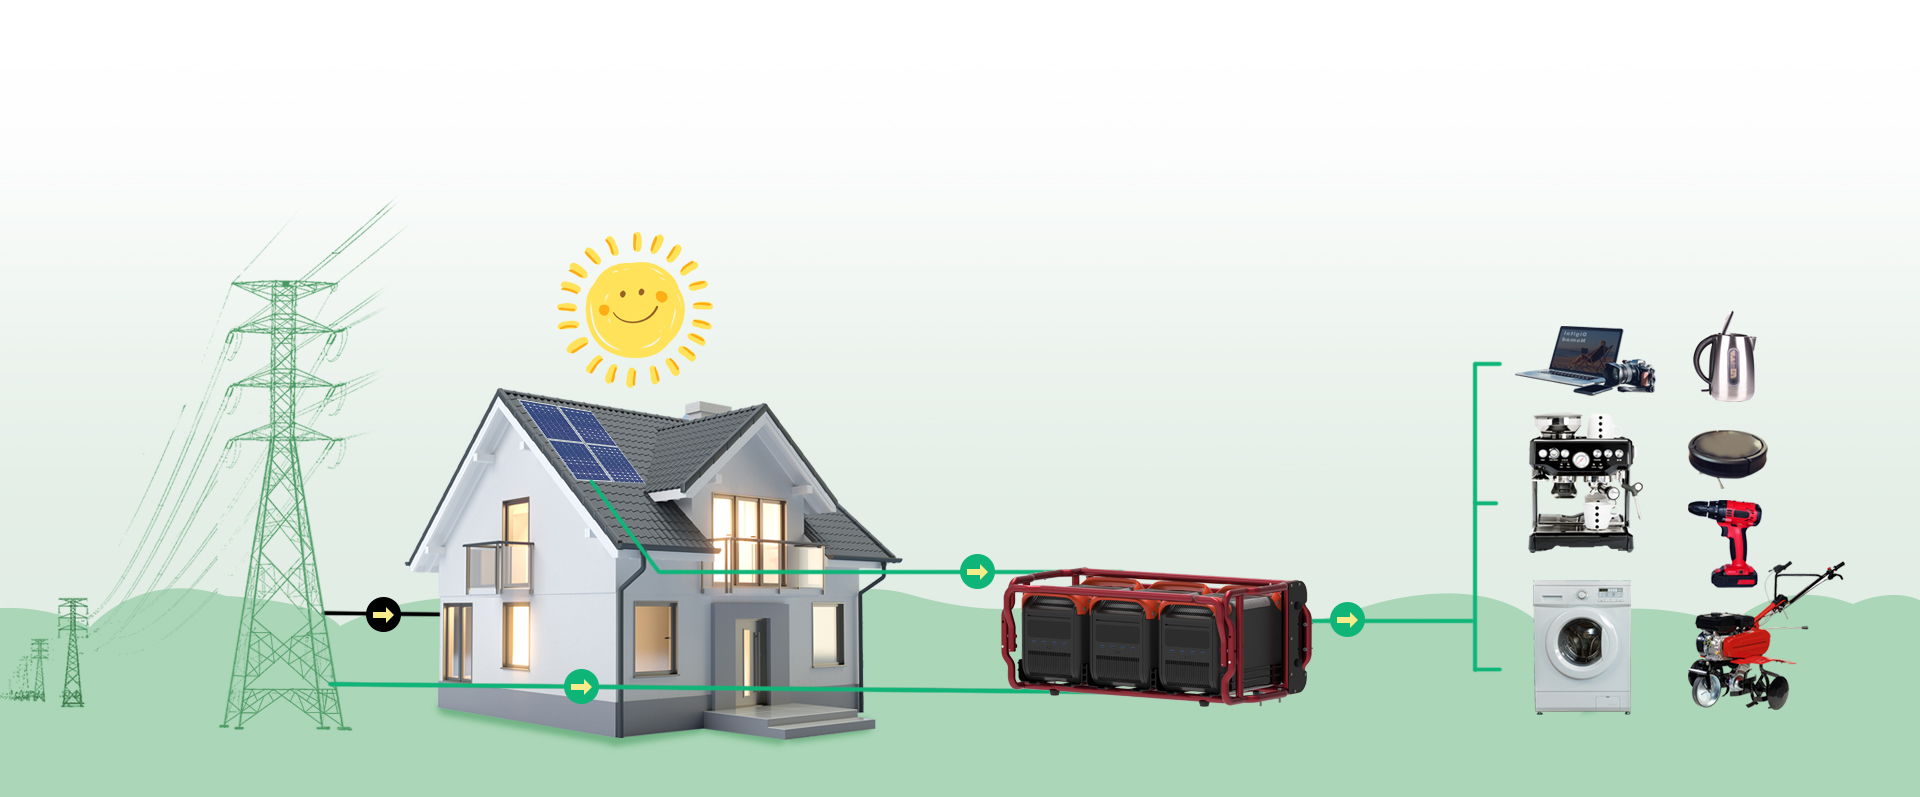 Solución del sistema de almacenamiento de energía solar de Elary